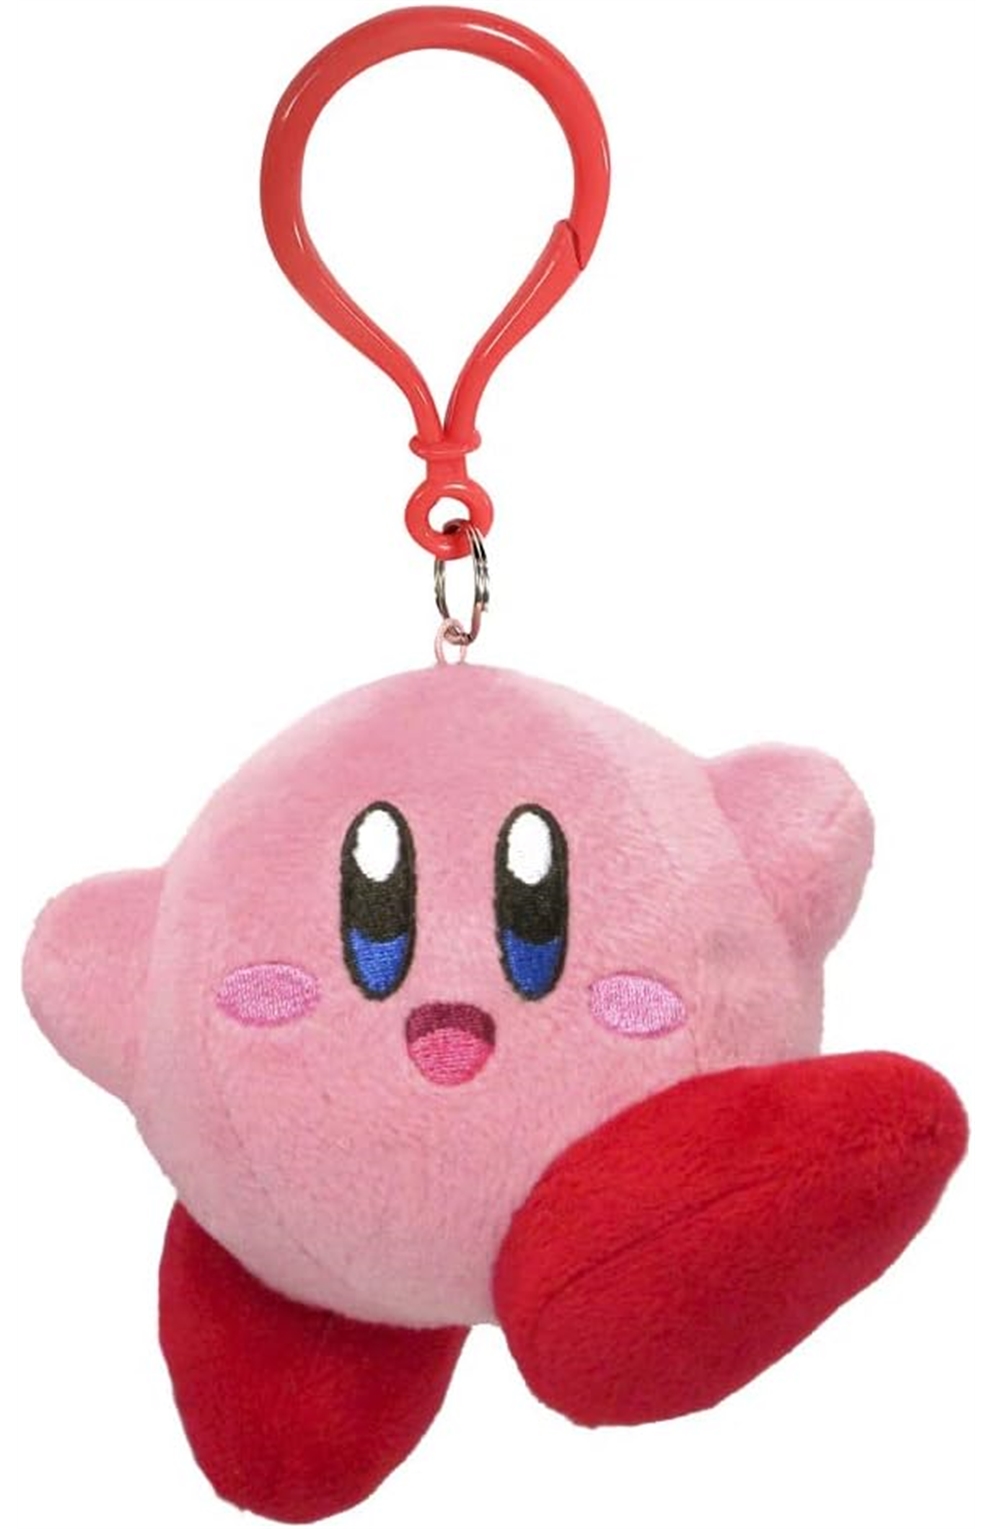 Kirby Jumping Pose Dangler Plush, 3.5"